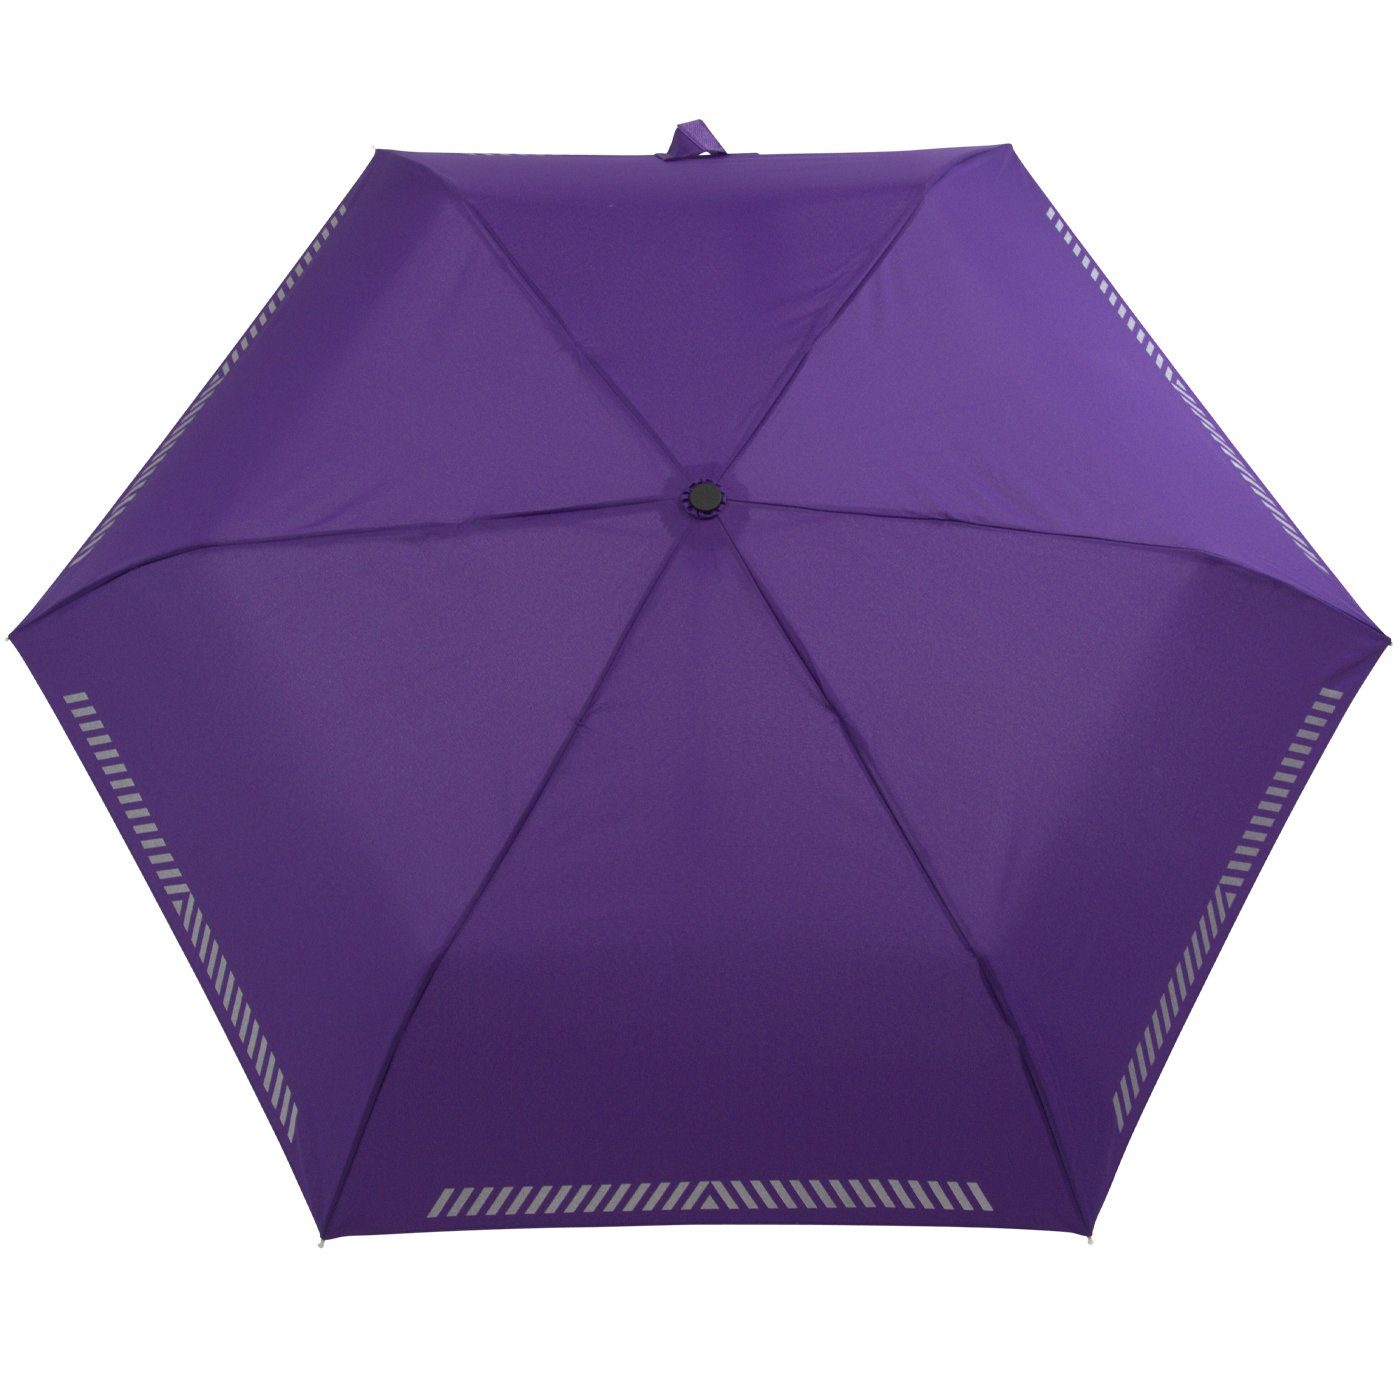 iX-brella Taschenregenschirm Auf-Zu-Automatik, Sicherheit berry durch reflektierend, Reflex-Streifen mit Kinderschirm 